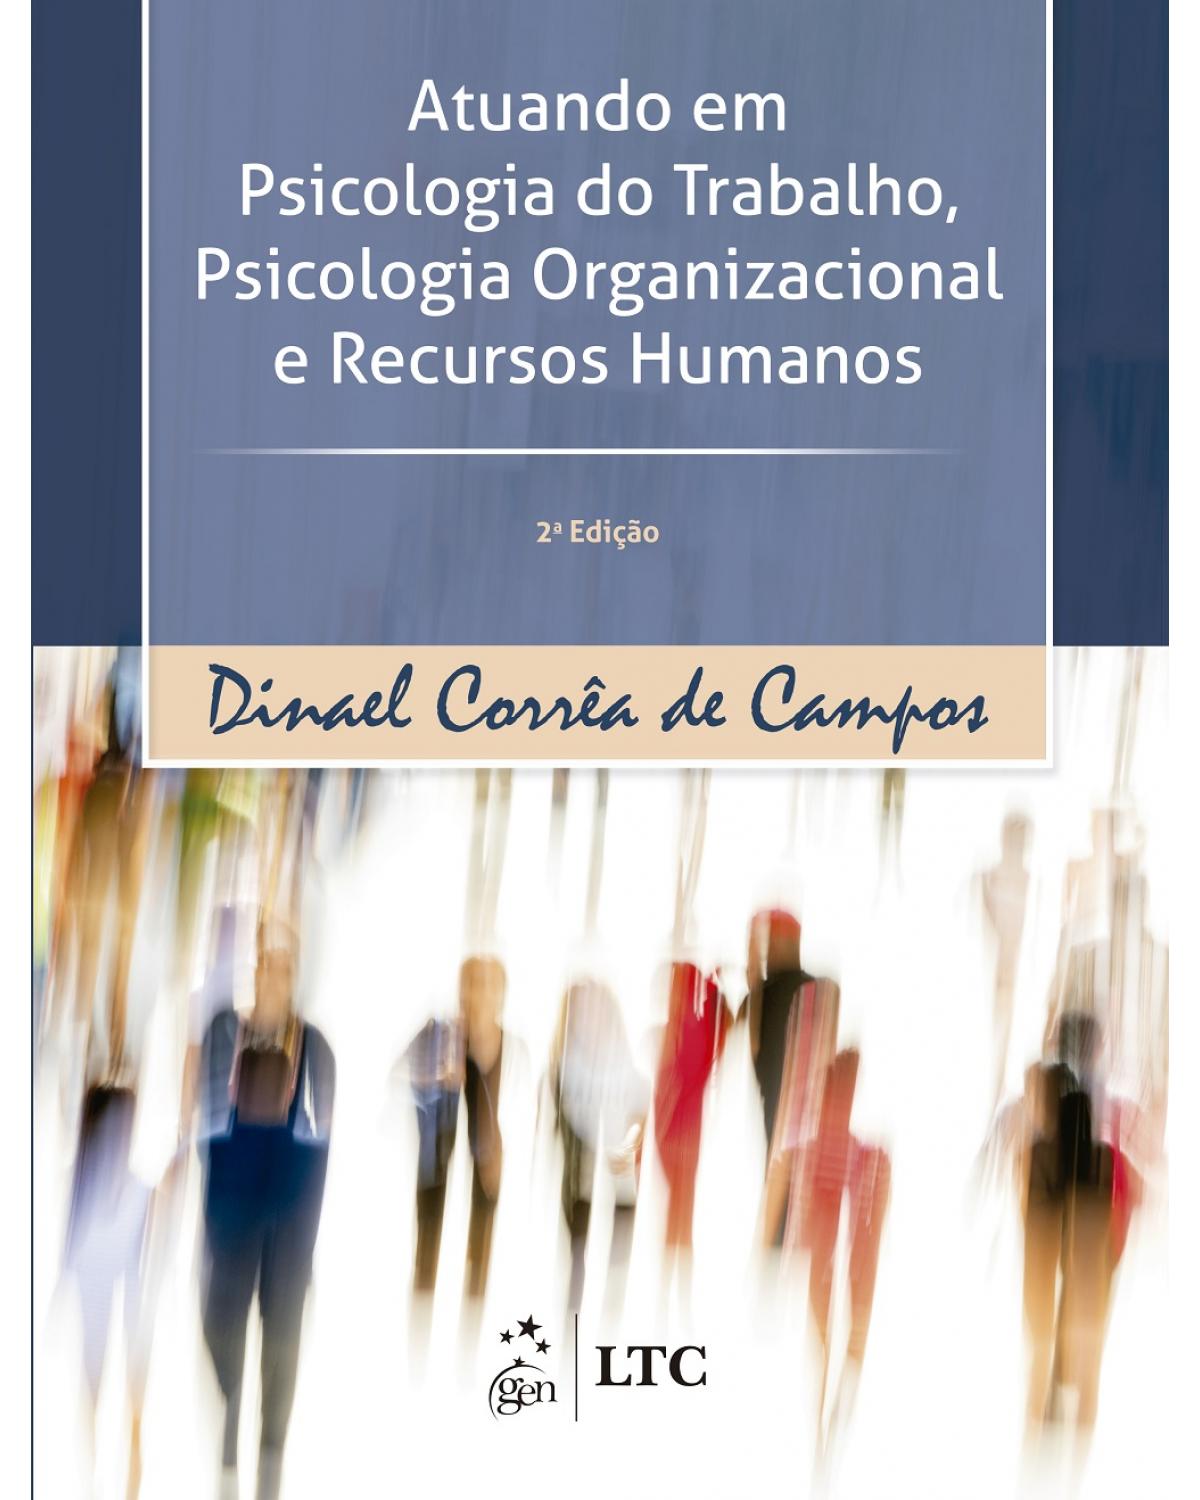 Atuando em psicologia do trabalho, psicologia organizacional e recursos humanos - 2ª Edição | 2017